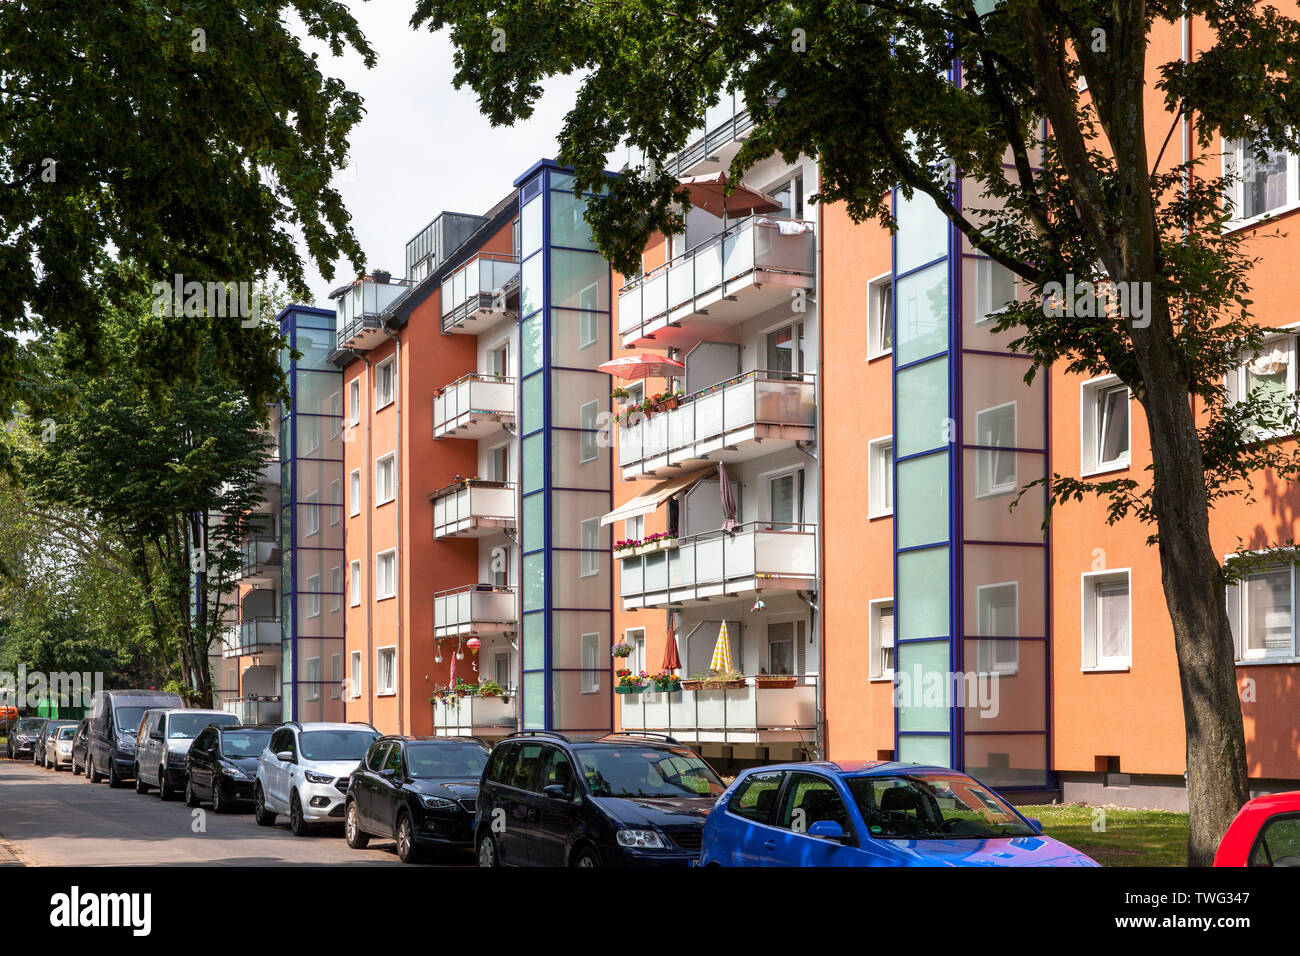 Le logement Stegerwald estate dans le secteur Muelheim, de protection du climat housing estate, Cologne, Allemagne. die im Stadtteil Stegerwaldsiedlung Muel Banque D'Images